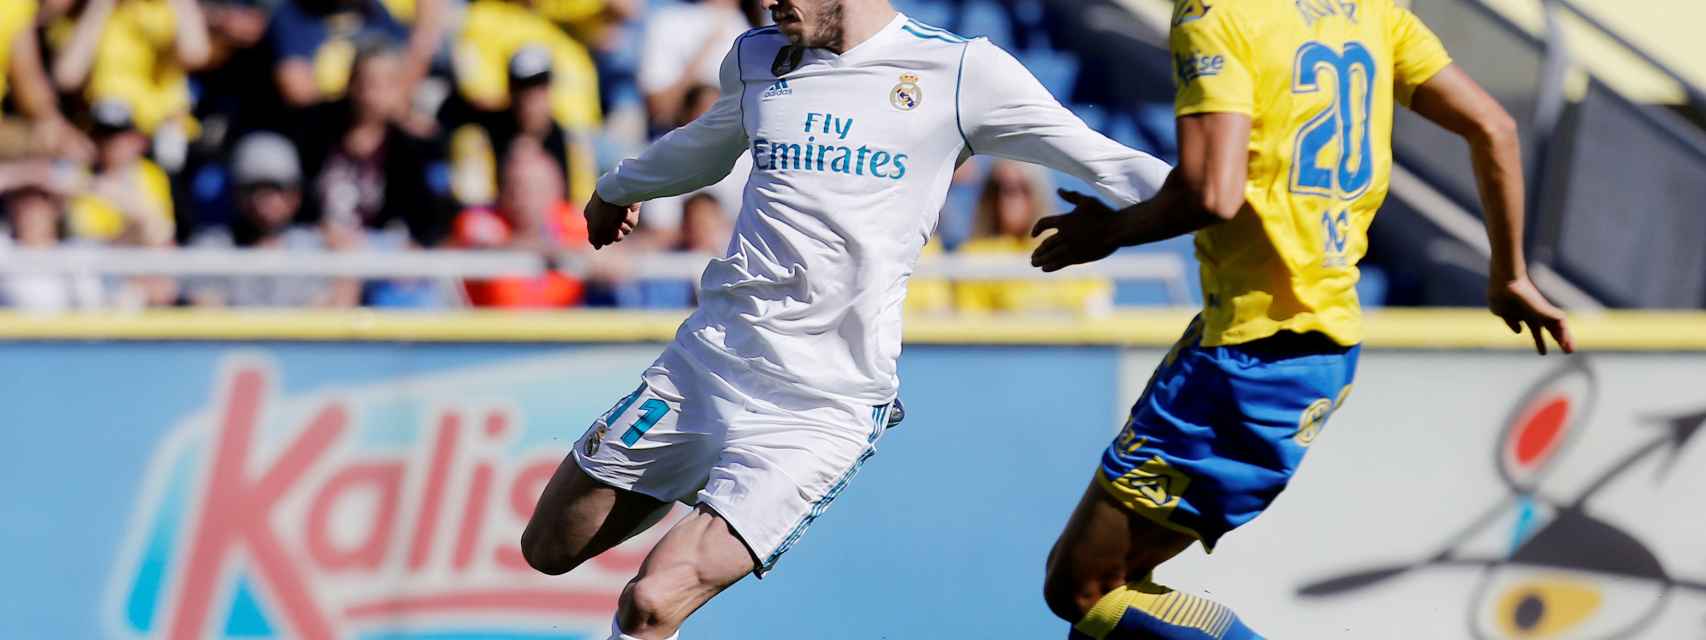 Gareth Bale en el partido Las Palmas - Real Madrid.